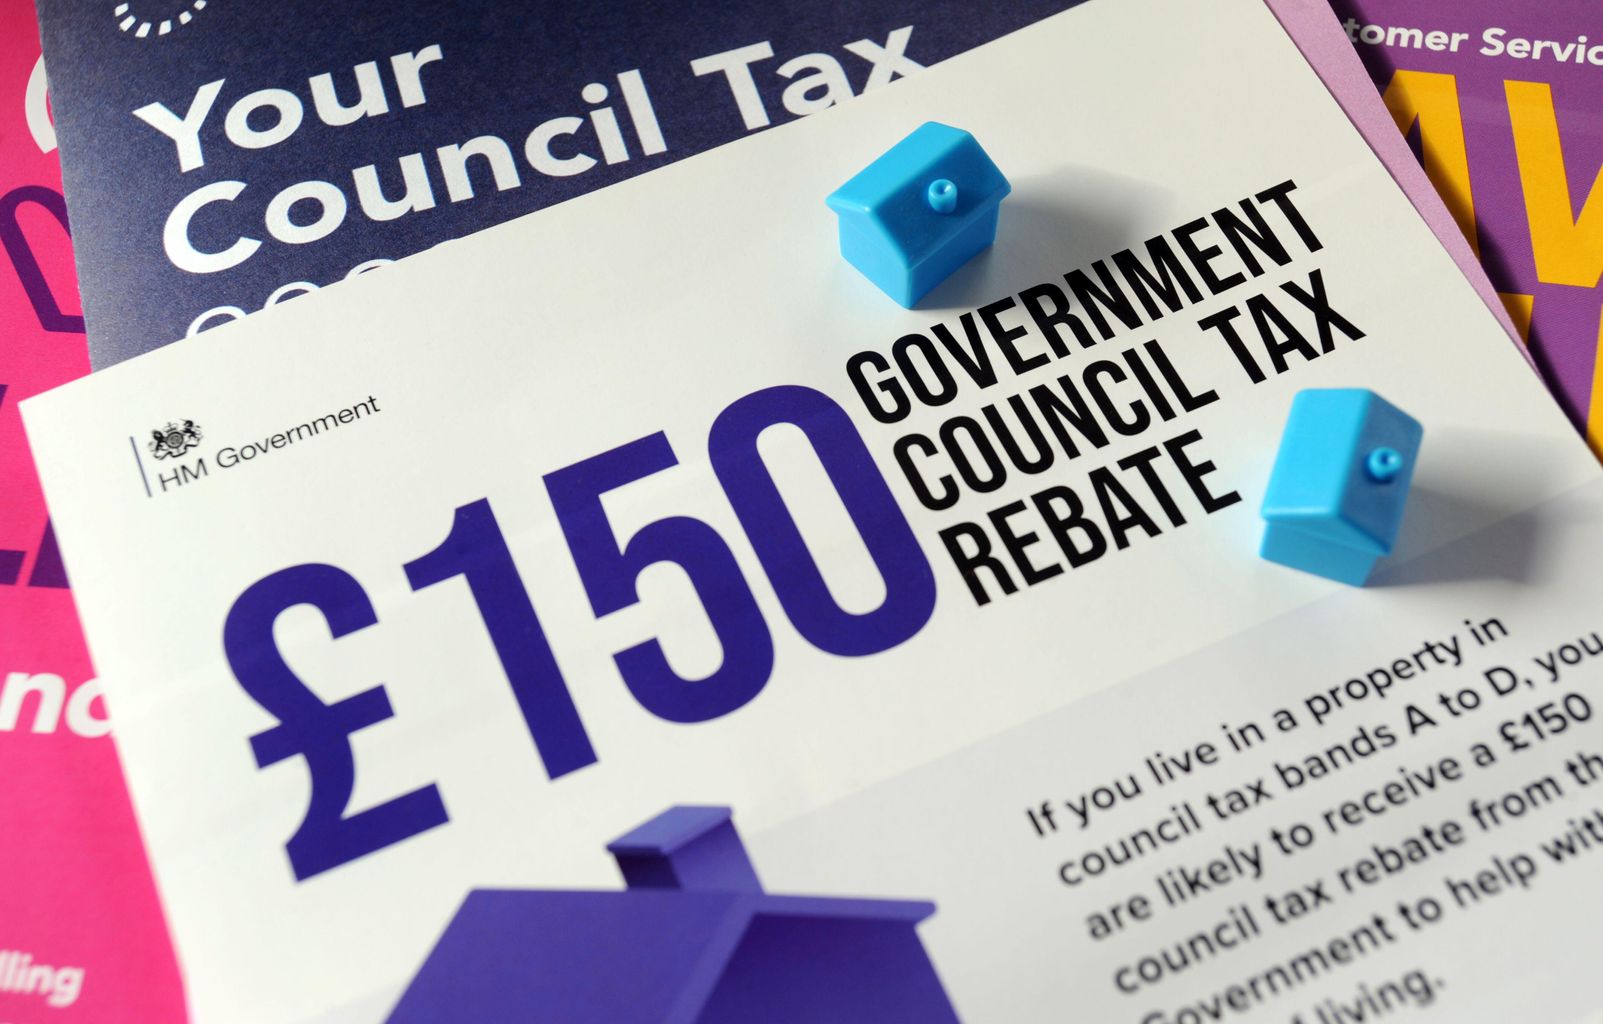 Tamworth Council Tax Rebate